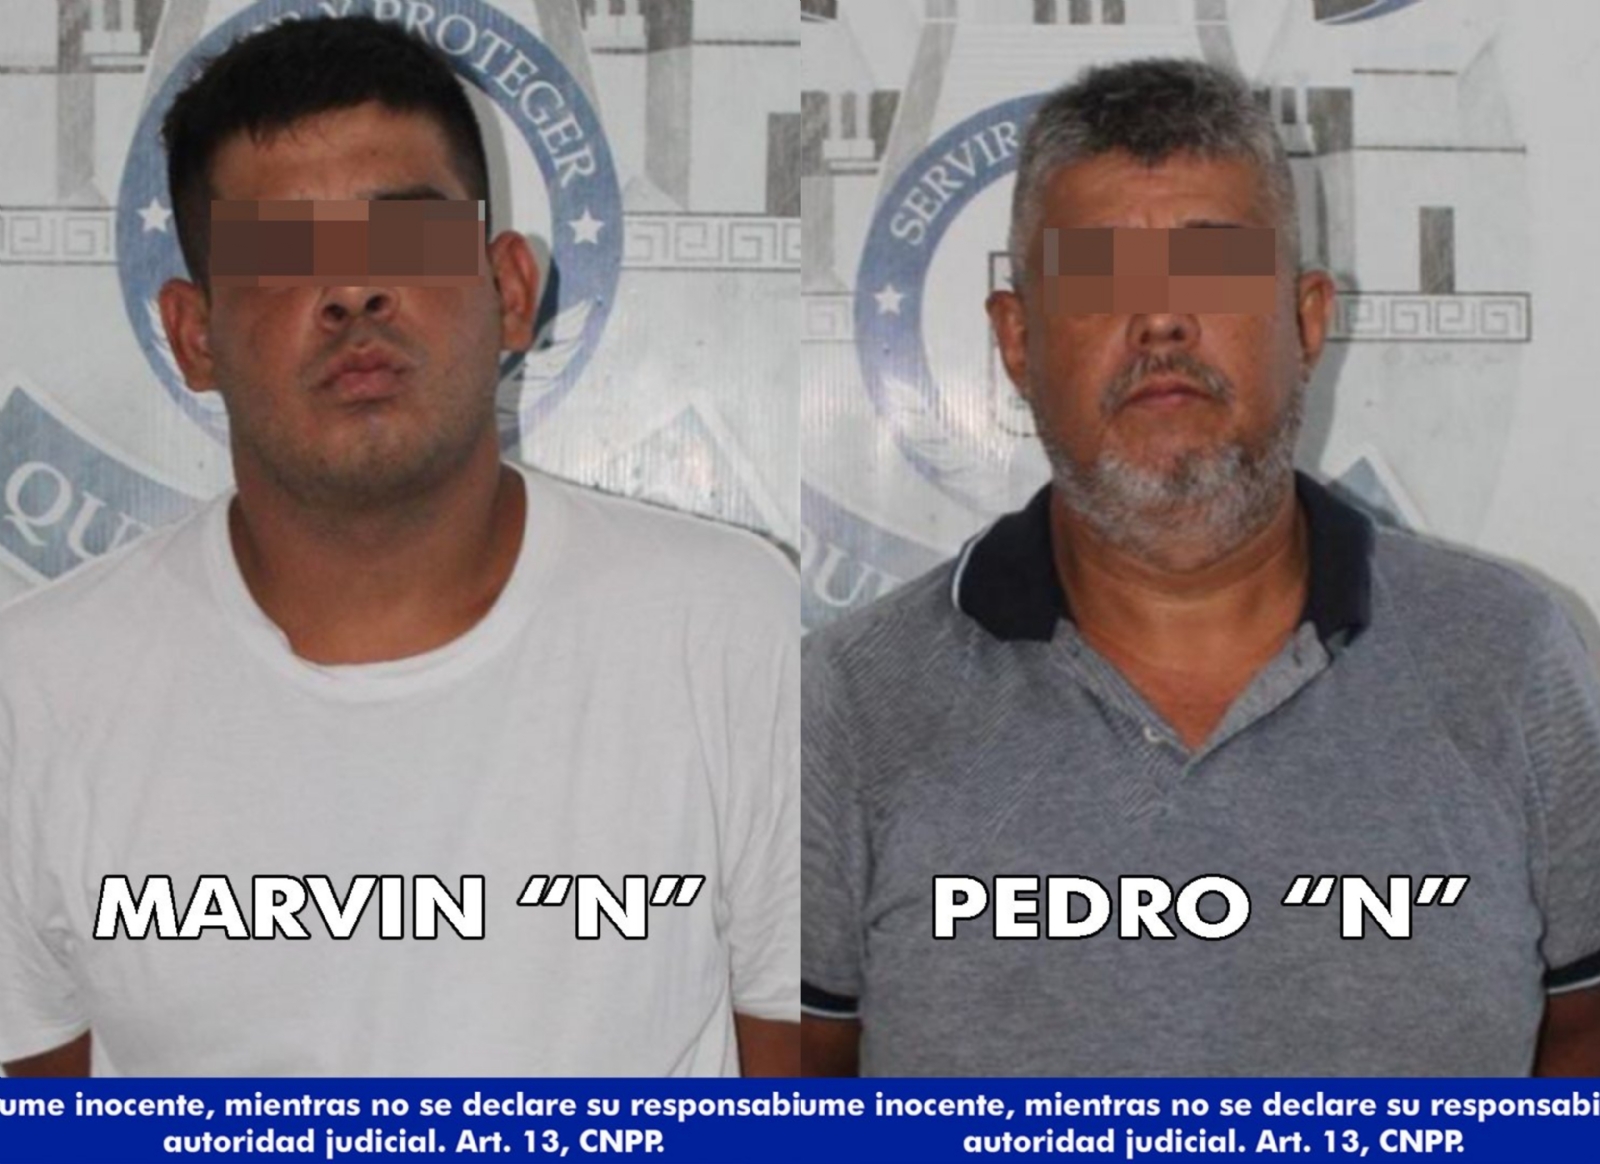 Dos de los detenidos son Marvin "N" y Pedro "N", quienes son sometidos a investigación